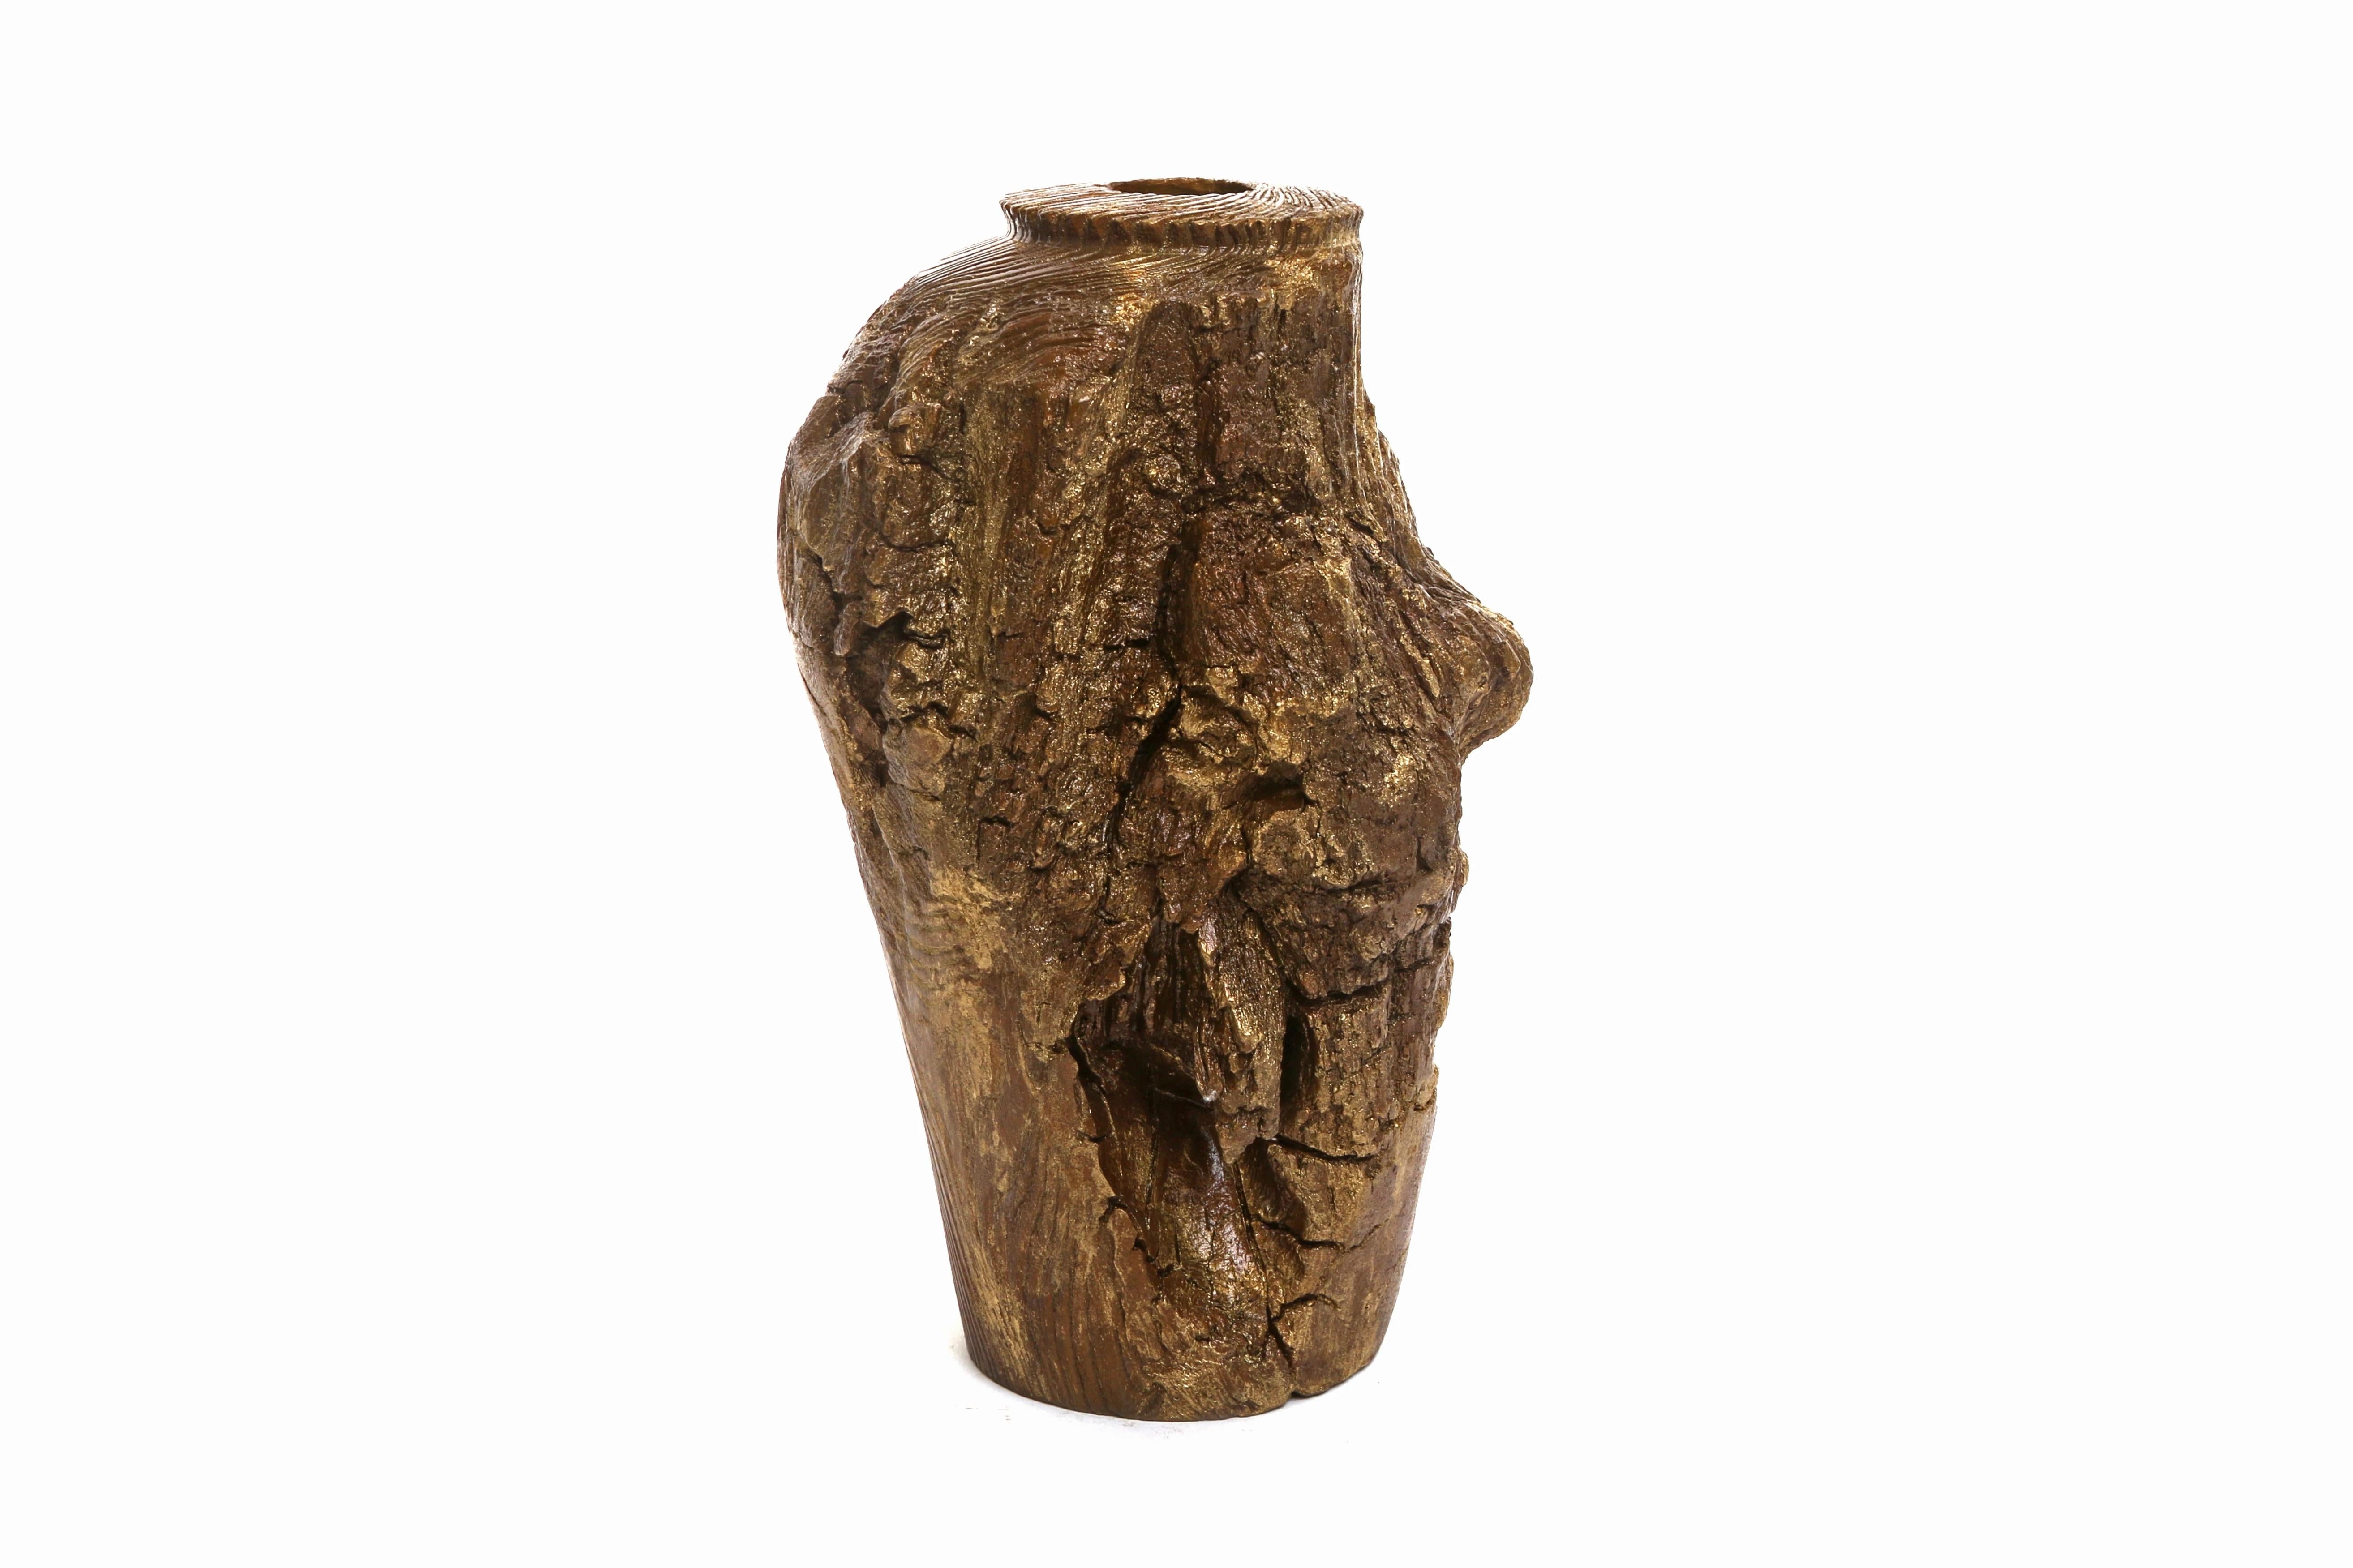 Coulé en bronze massif, le vase Cliff est une œuvre fonctionnelle et sculpturale en bois
Détail et patine or.

Inspiré par les silhouettes que l'on trouve dans la nature, CHAABAN a cherché à créer une ligne d'objets en bronze uniques et de mobilier